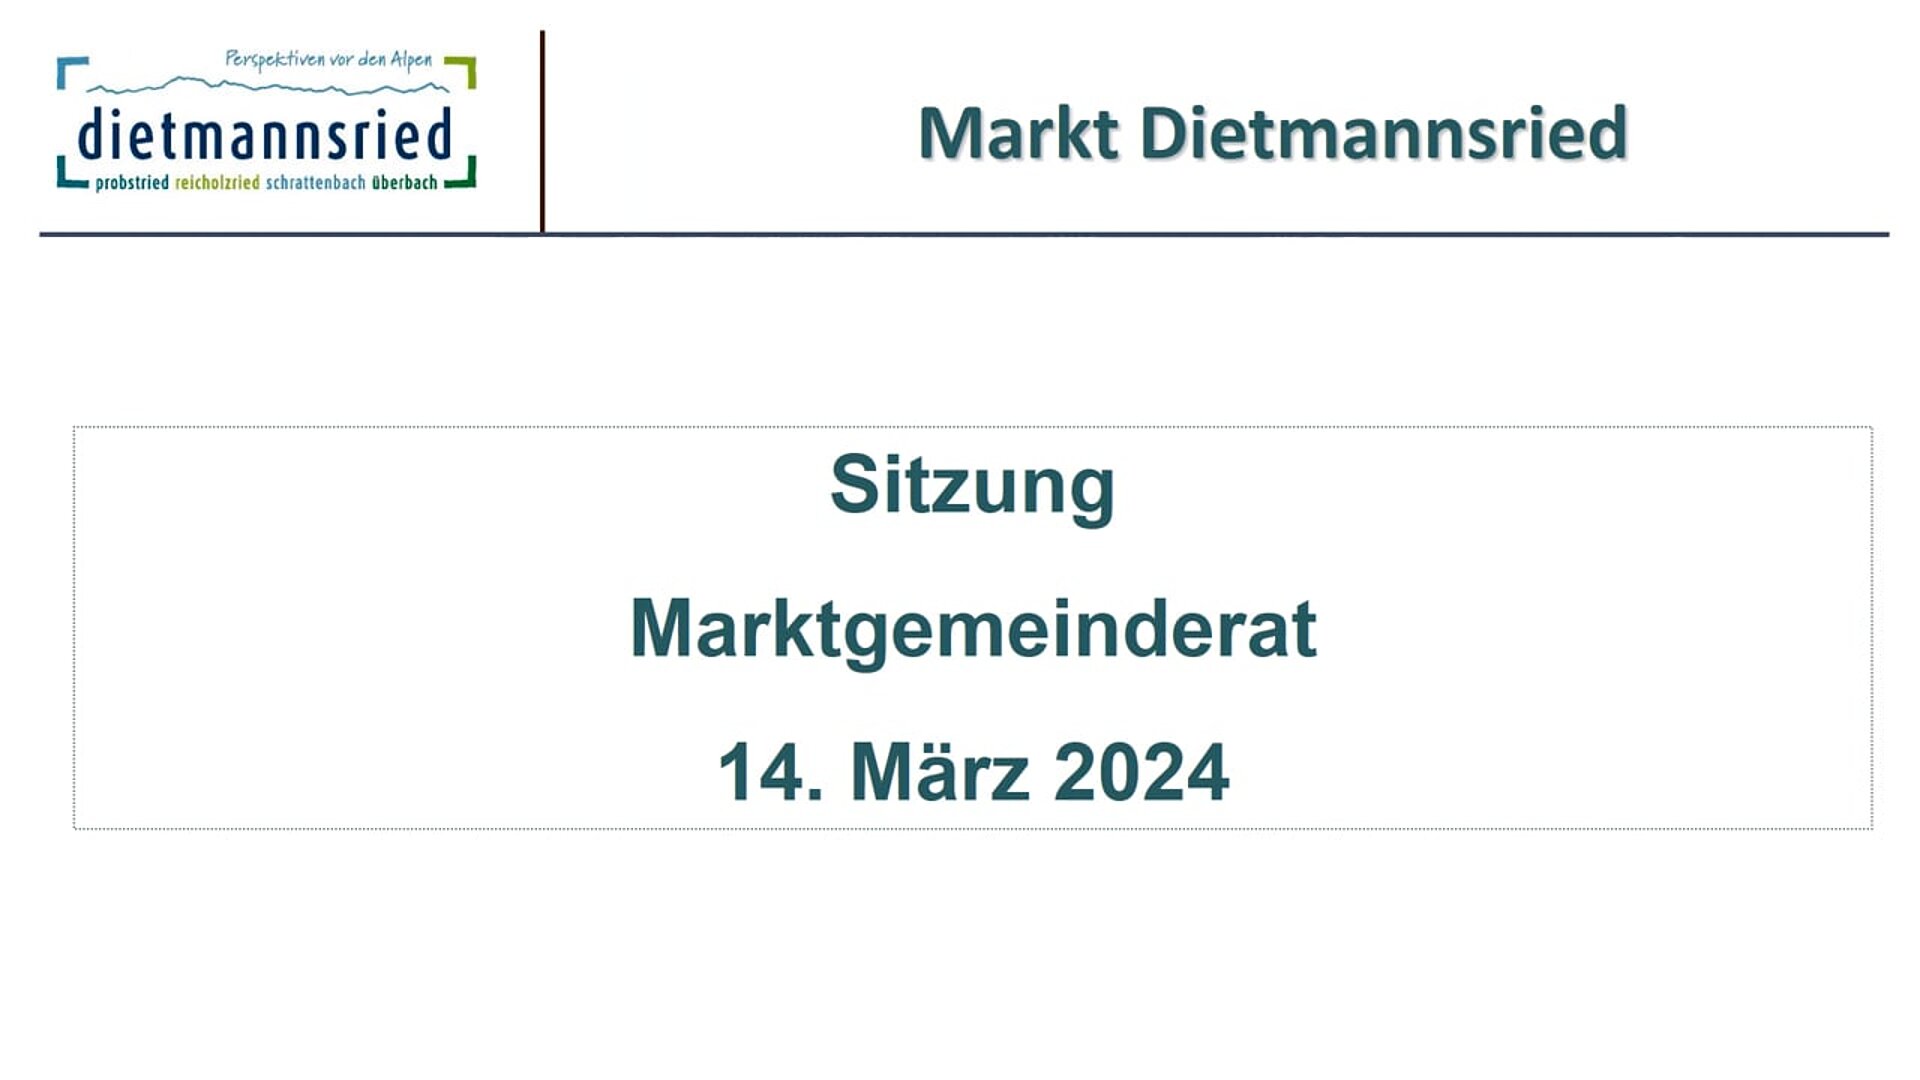 Sitzung Marktgemeinderat 14. März 2024